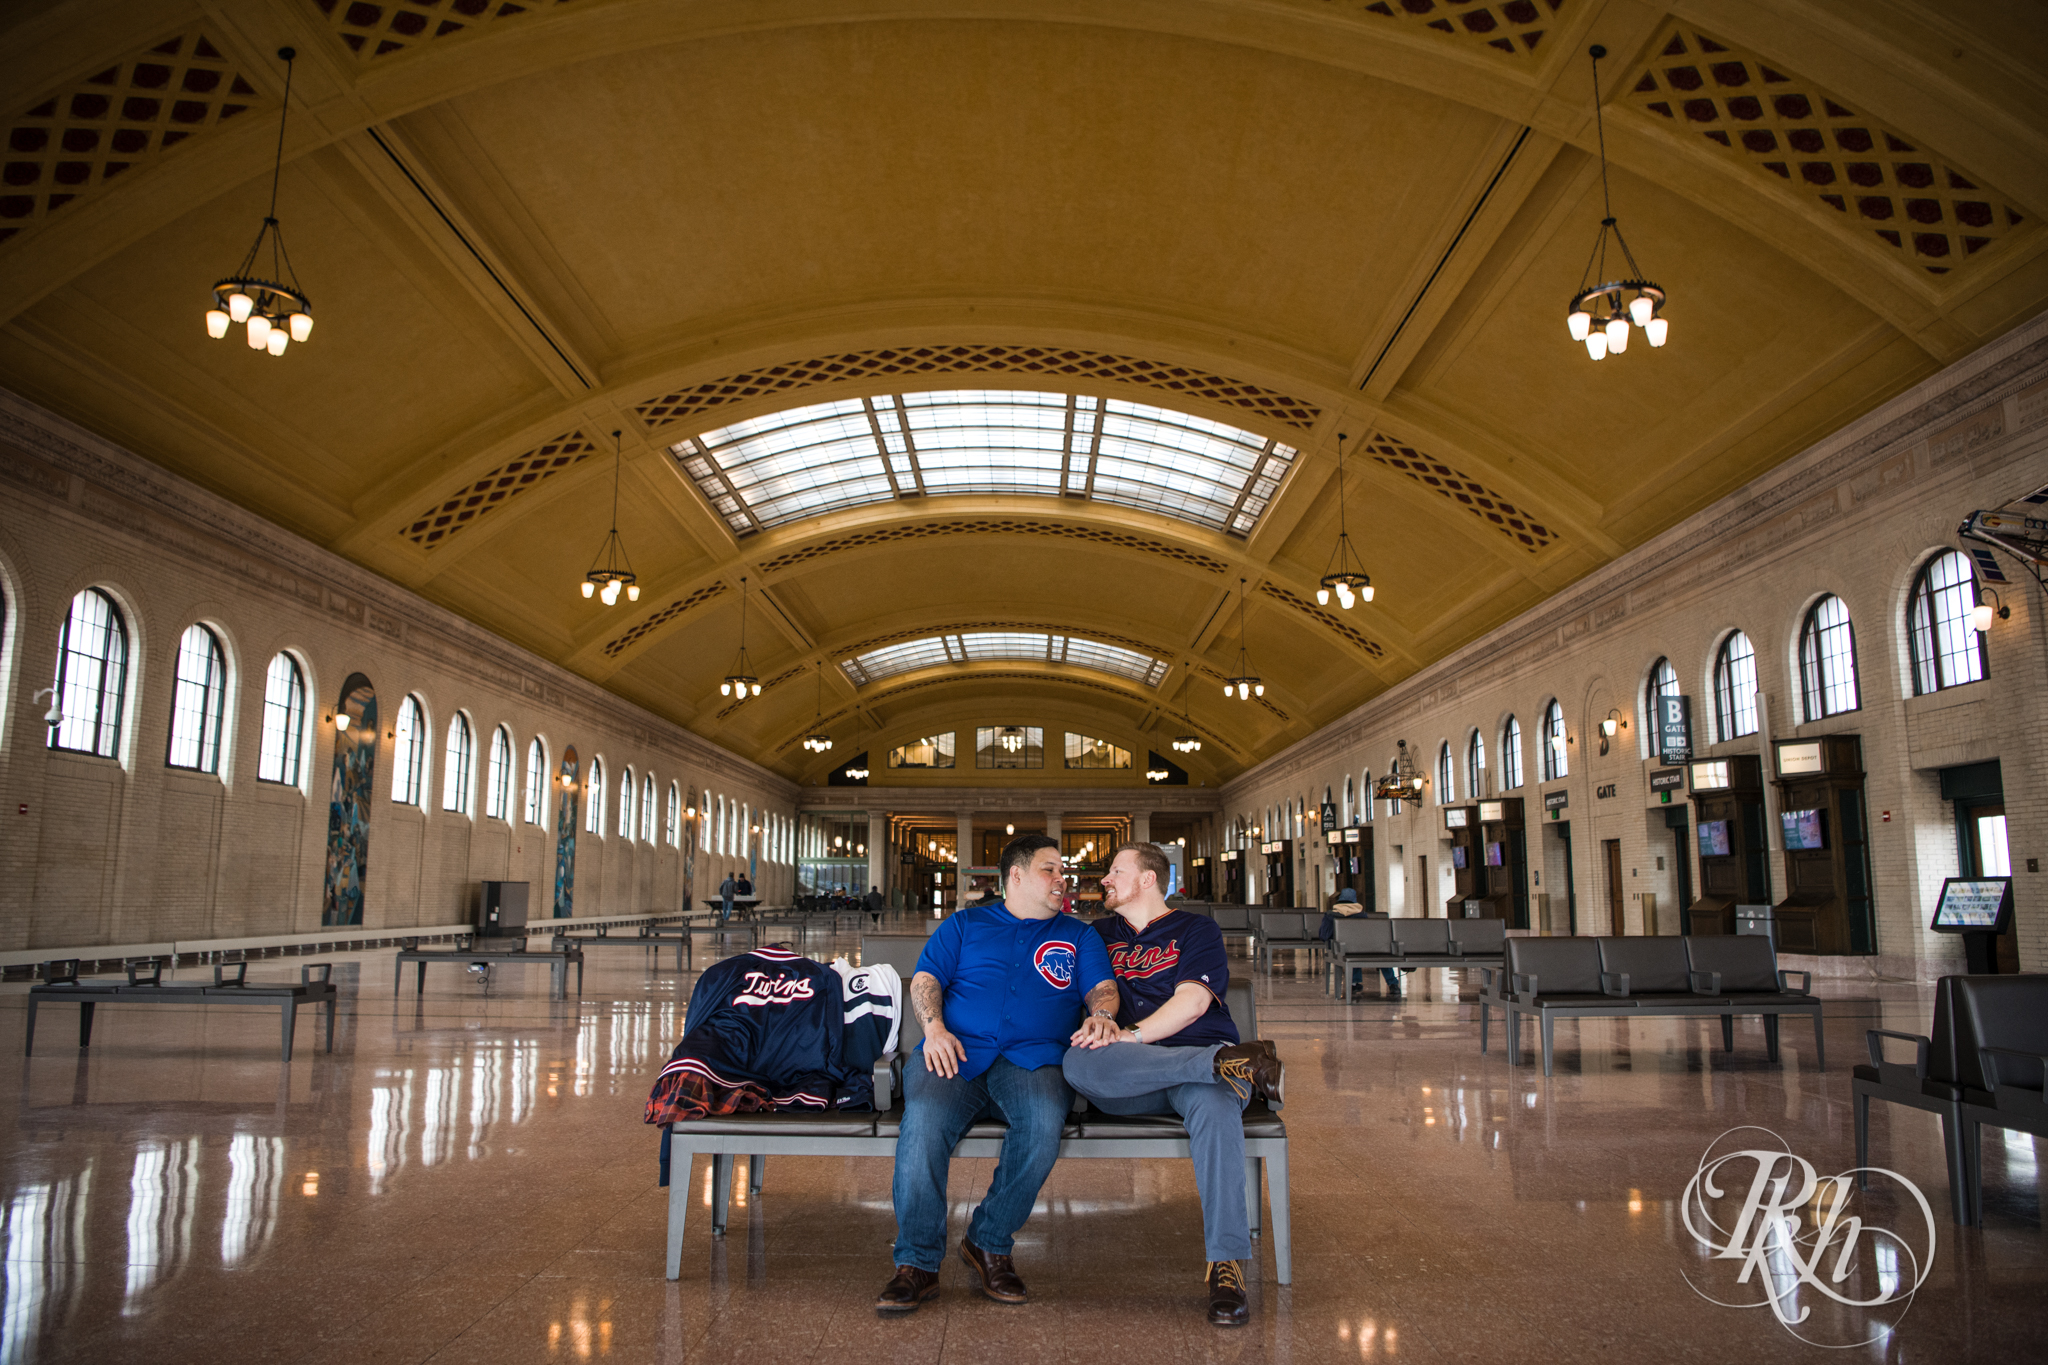 Two gay men in baseball jerseys smile in Union Depot in Saint Paul, Minnesota.